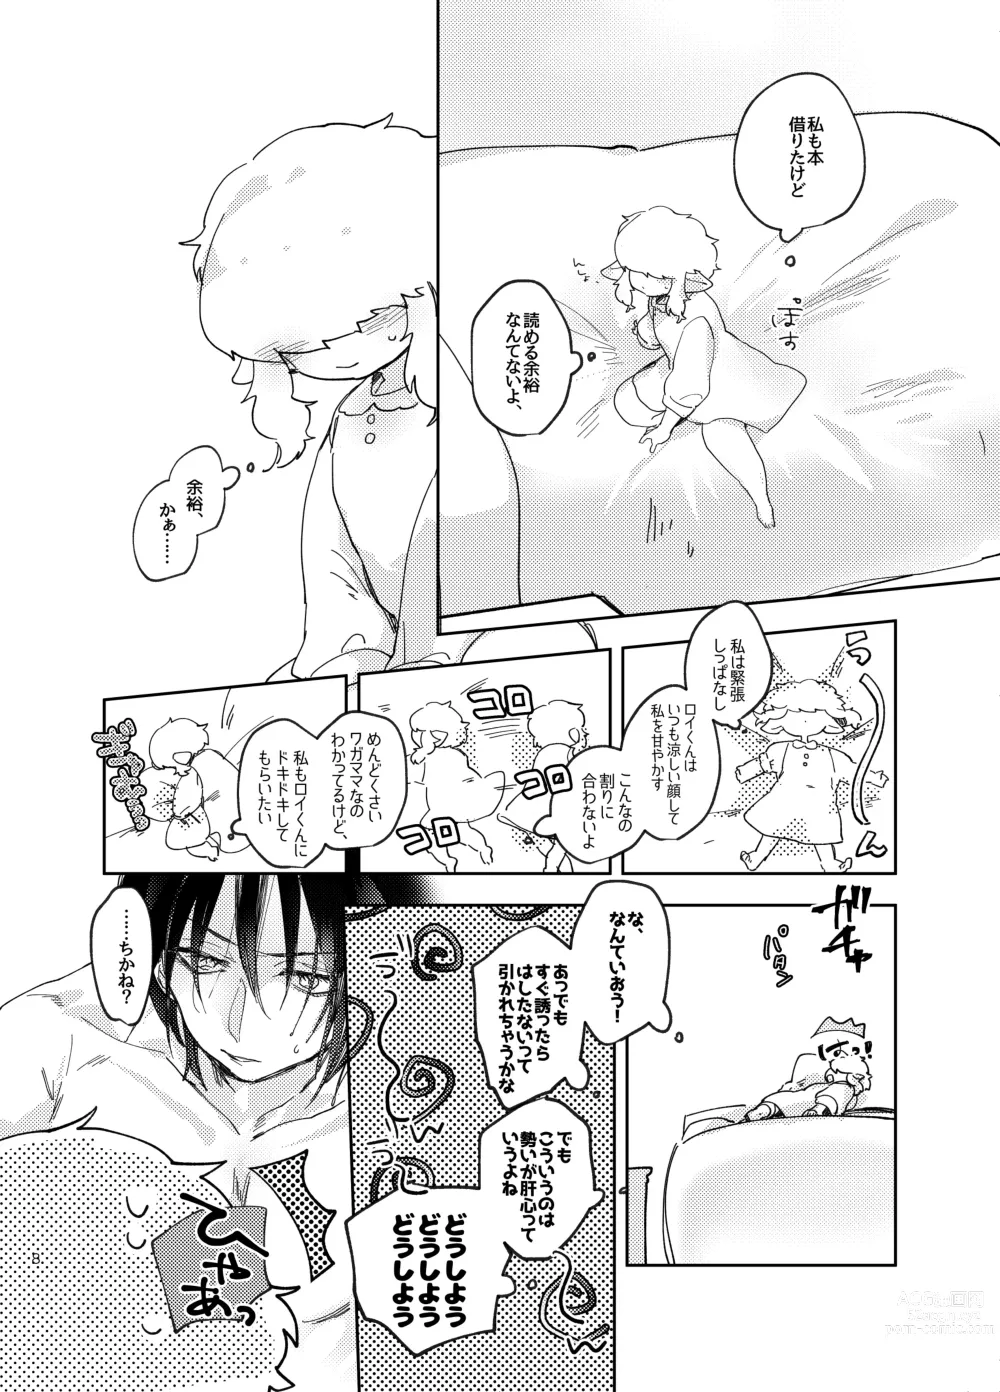 Page 8 of doujinshi Suki ni Natte ne